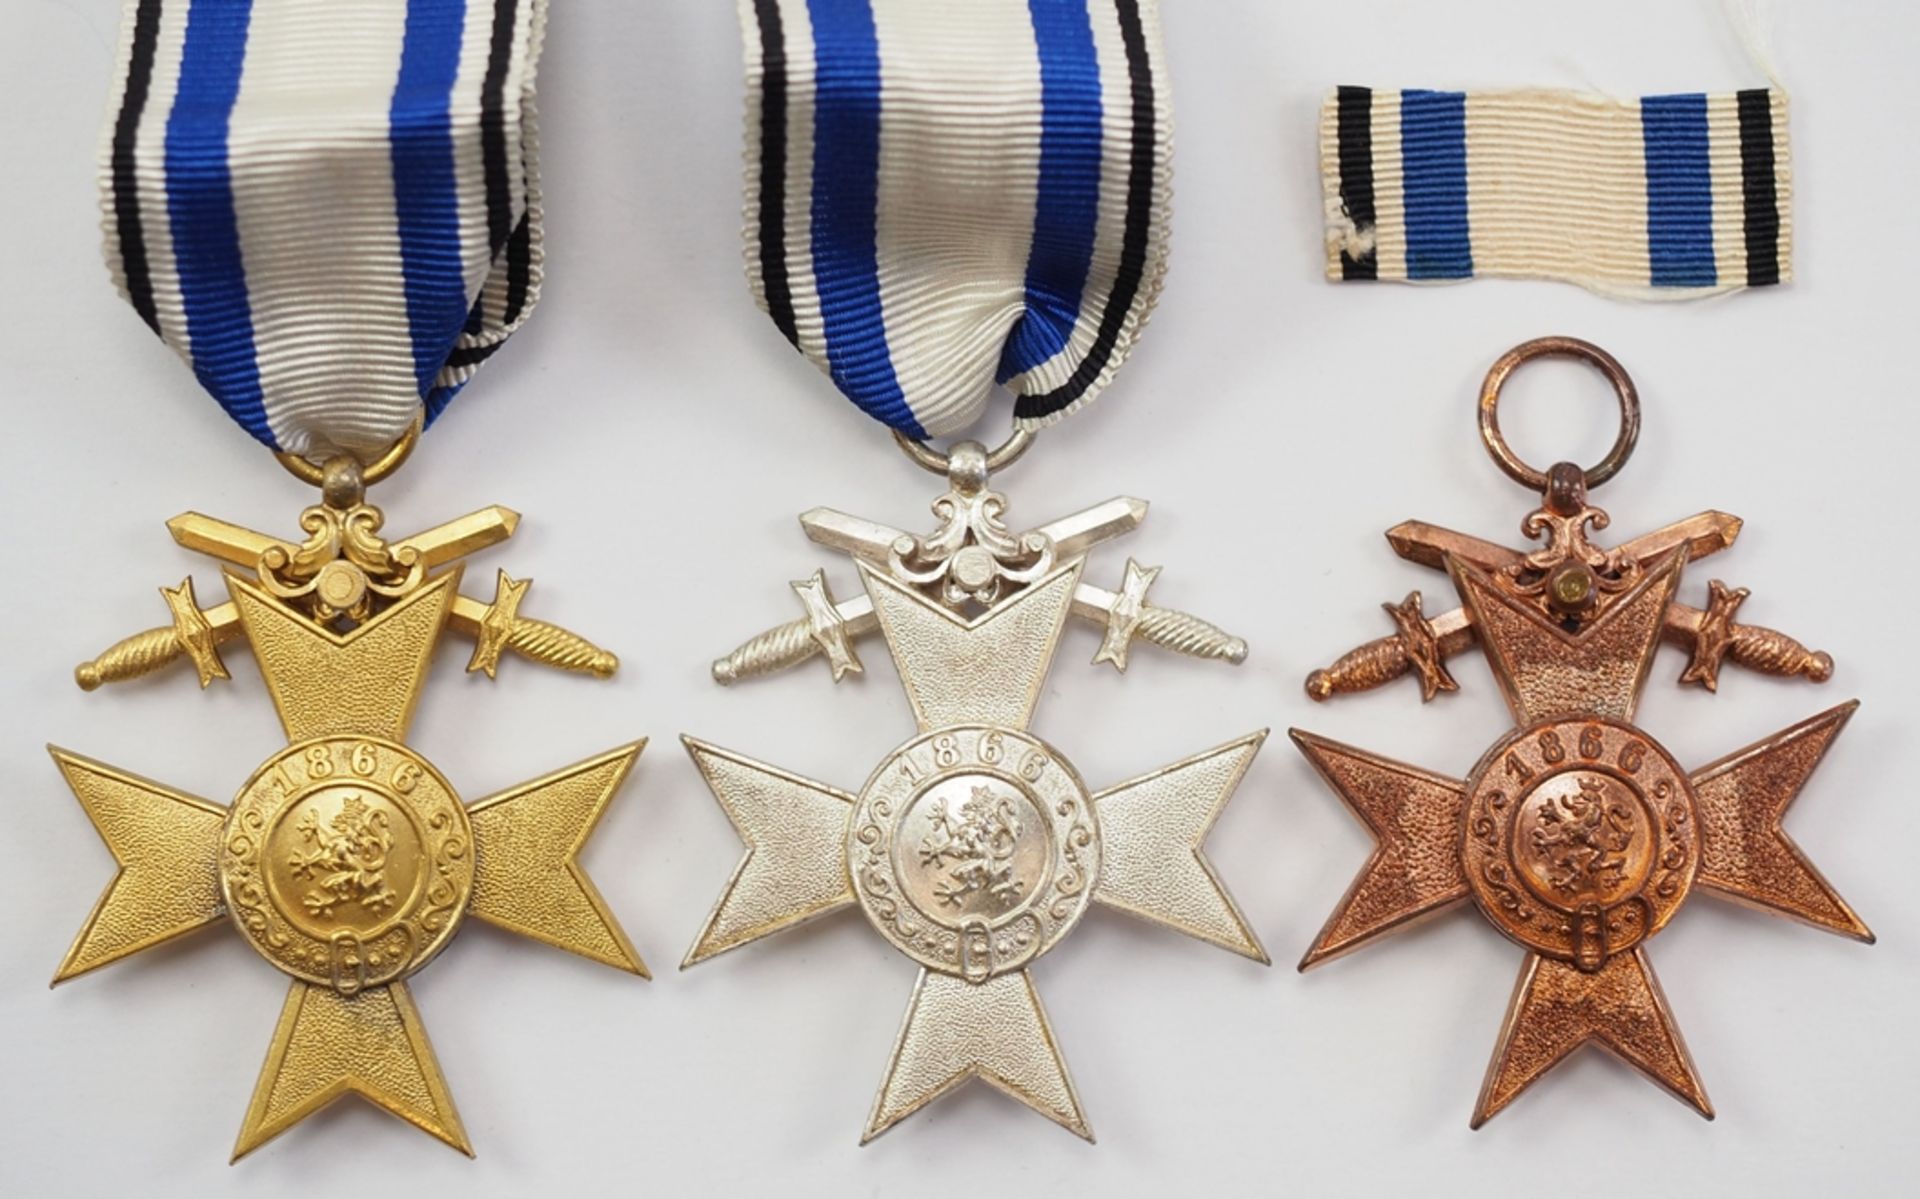 Bayern: Militär-Verdienstkreuz, 1., 2. und 3. Klasse, mit Schwertern. - Bild 2 aus 2